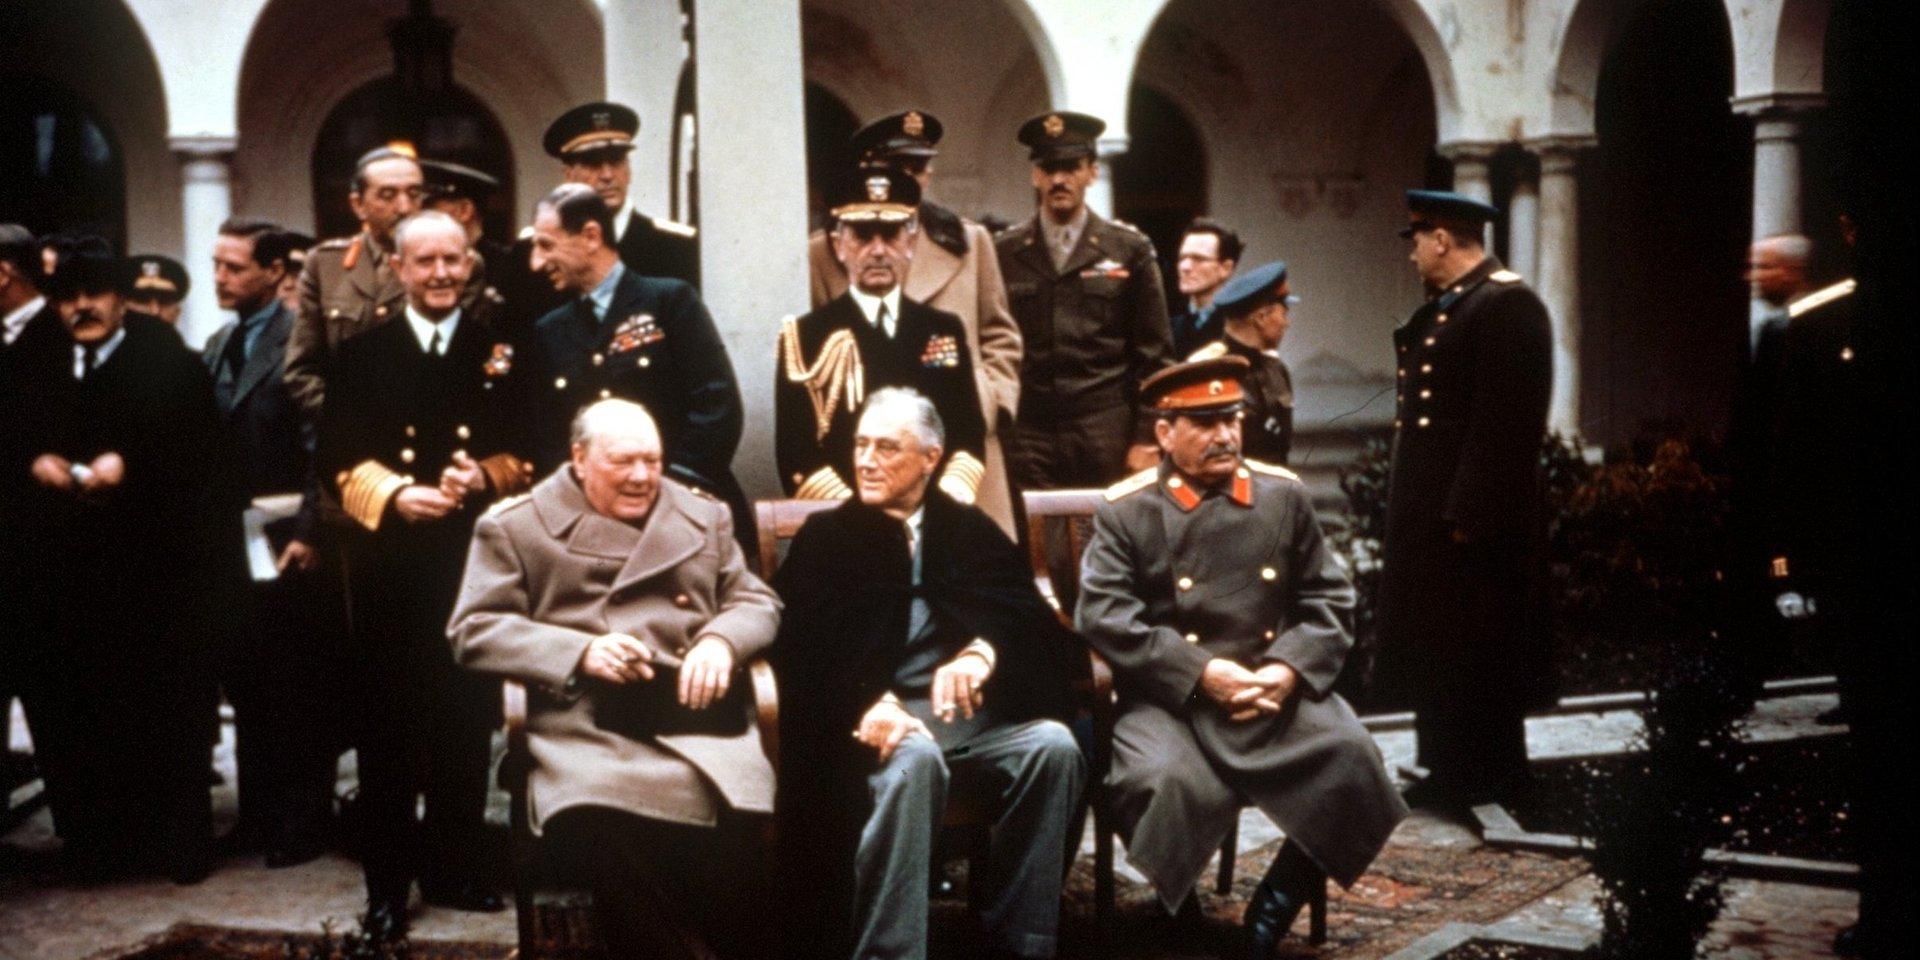 Inför krigsslutet hade de ledande segrarmakterna gjort upp vid Jaltakonferensen på Krim i februari 1945. På den här berömda bilden sitter Winston Churchill (Storbritannien) bredvid Franklin Roosevelt (USA) och Josef Stalin (Sovjetunionen).